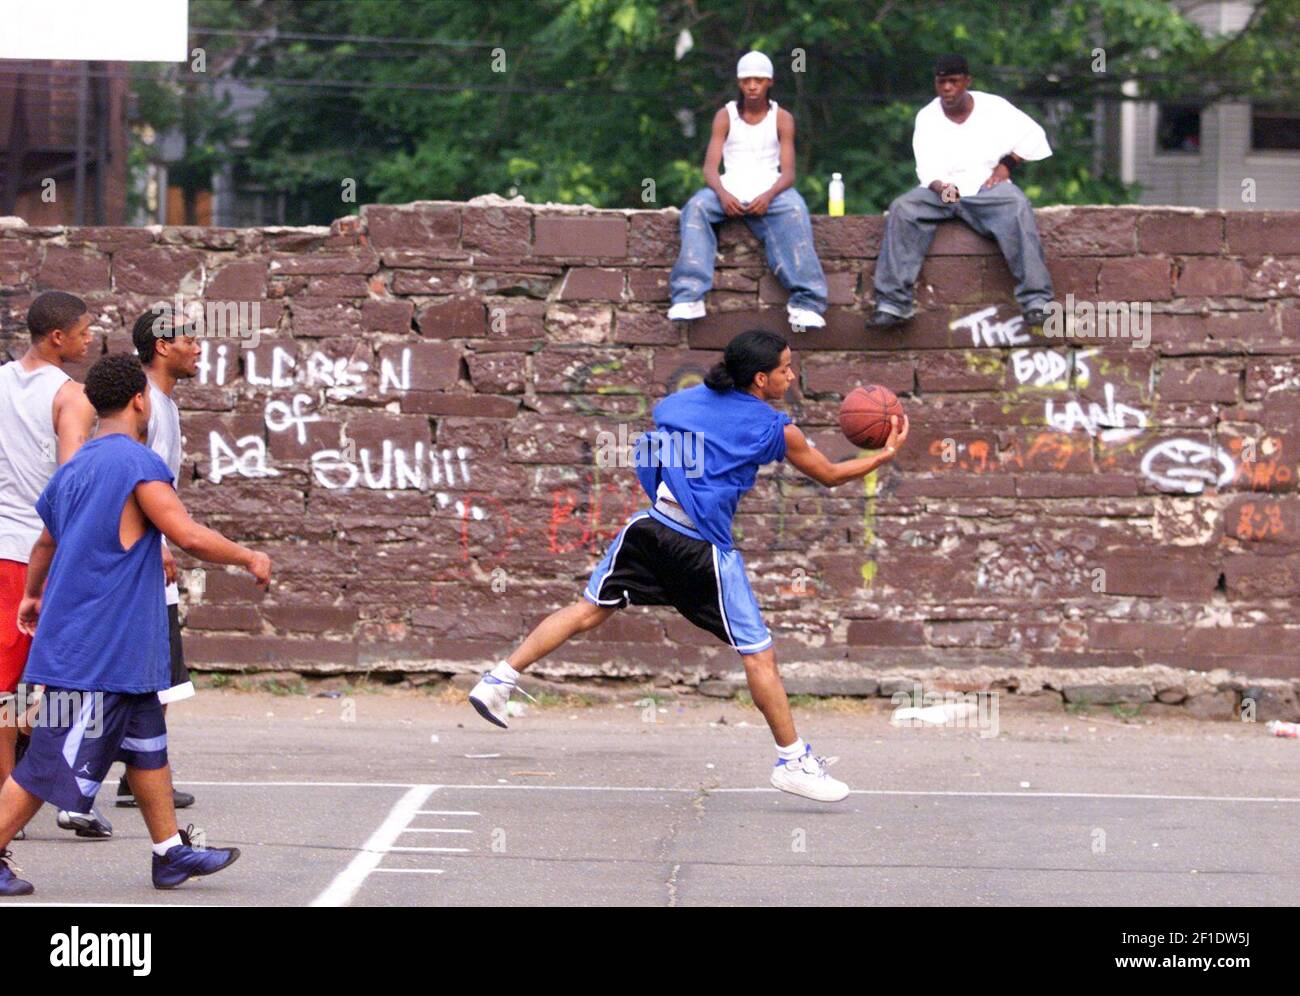 18 de julio de 2002; Paterson, NJ, EE.UU.; David Reyes, de 18 años, de Manhattan, NY, del equipo Spanish Harlem obtiene el control de la pelota mientras una multitud comienza a reunirse en los juegos del torneo de baloncesto en 12th Street en Paterson. Crédito obligatorio: Elizabeth Lara/Herald News via USA TODAY NETWORK/Sipa USA Foto de stock